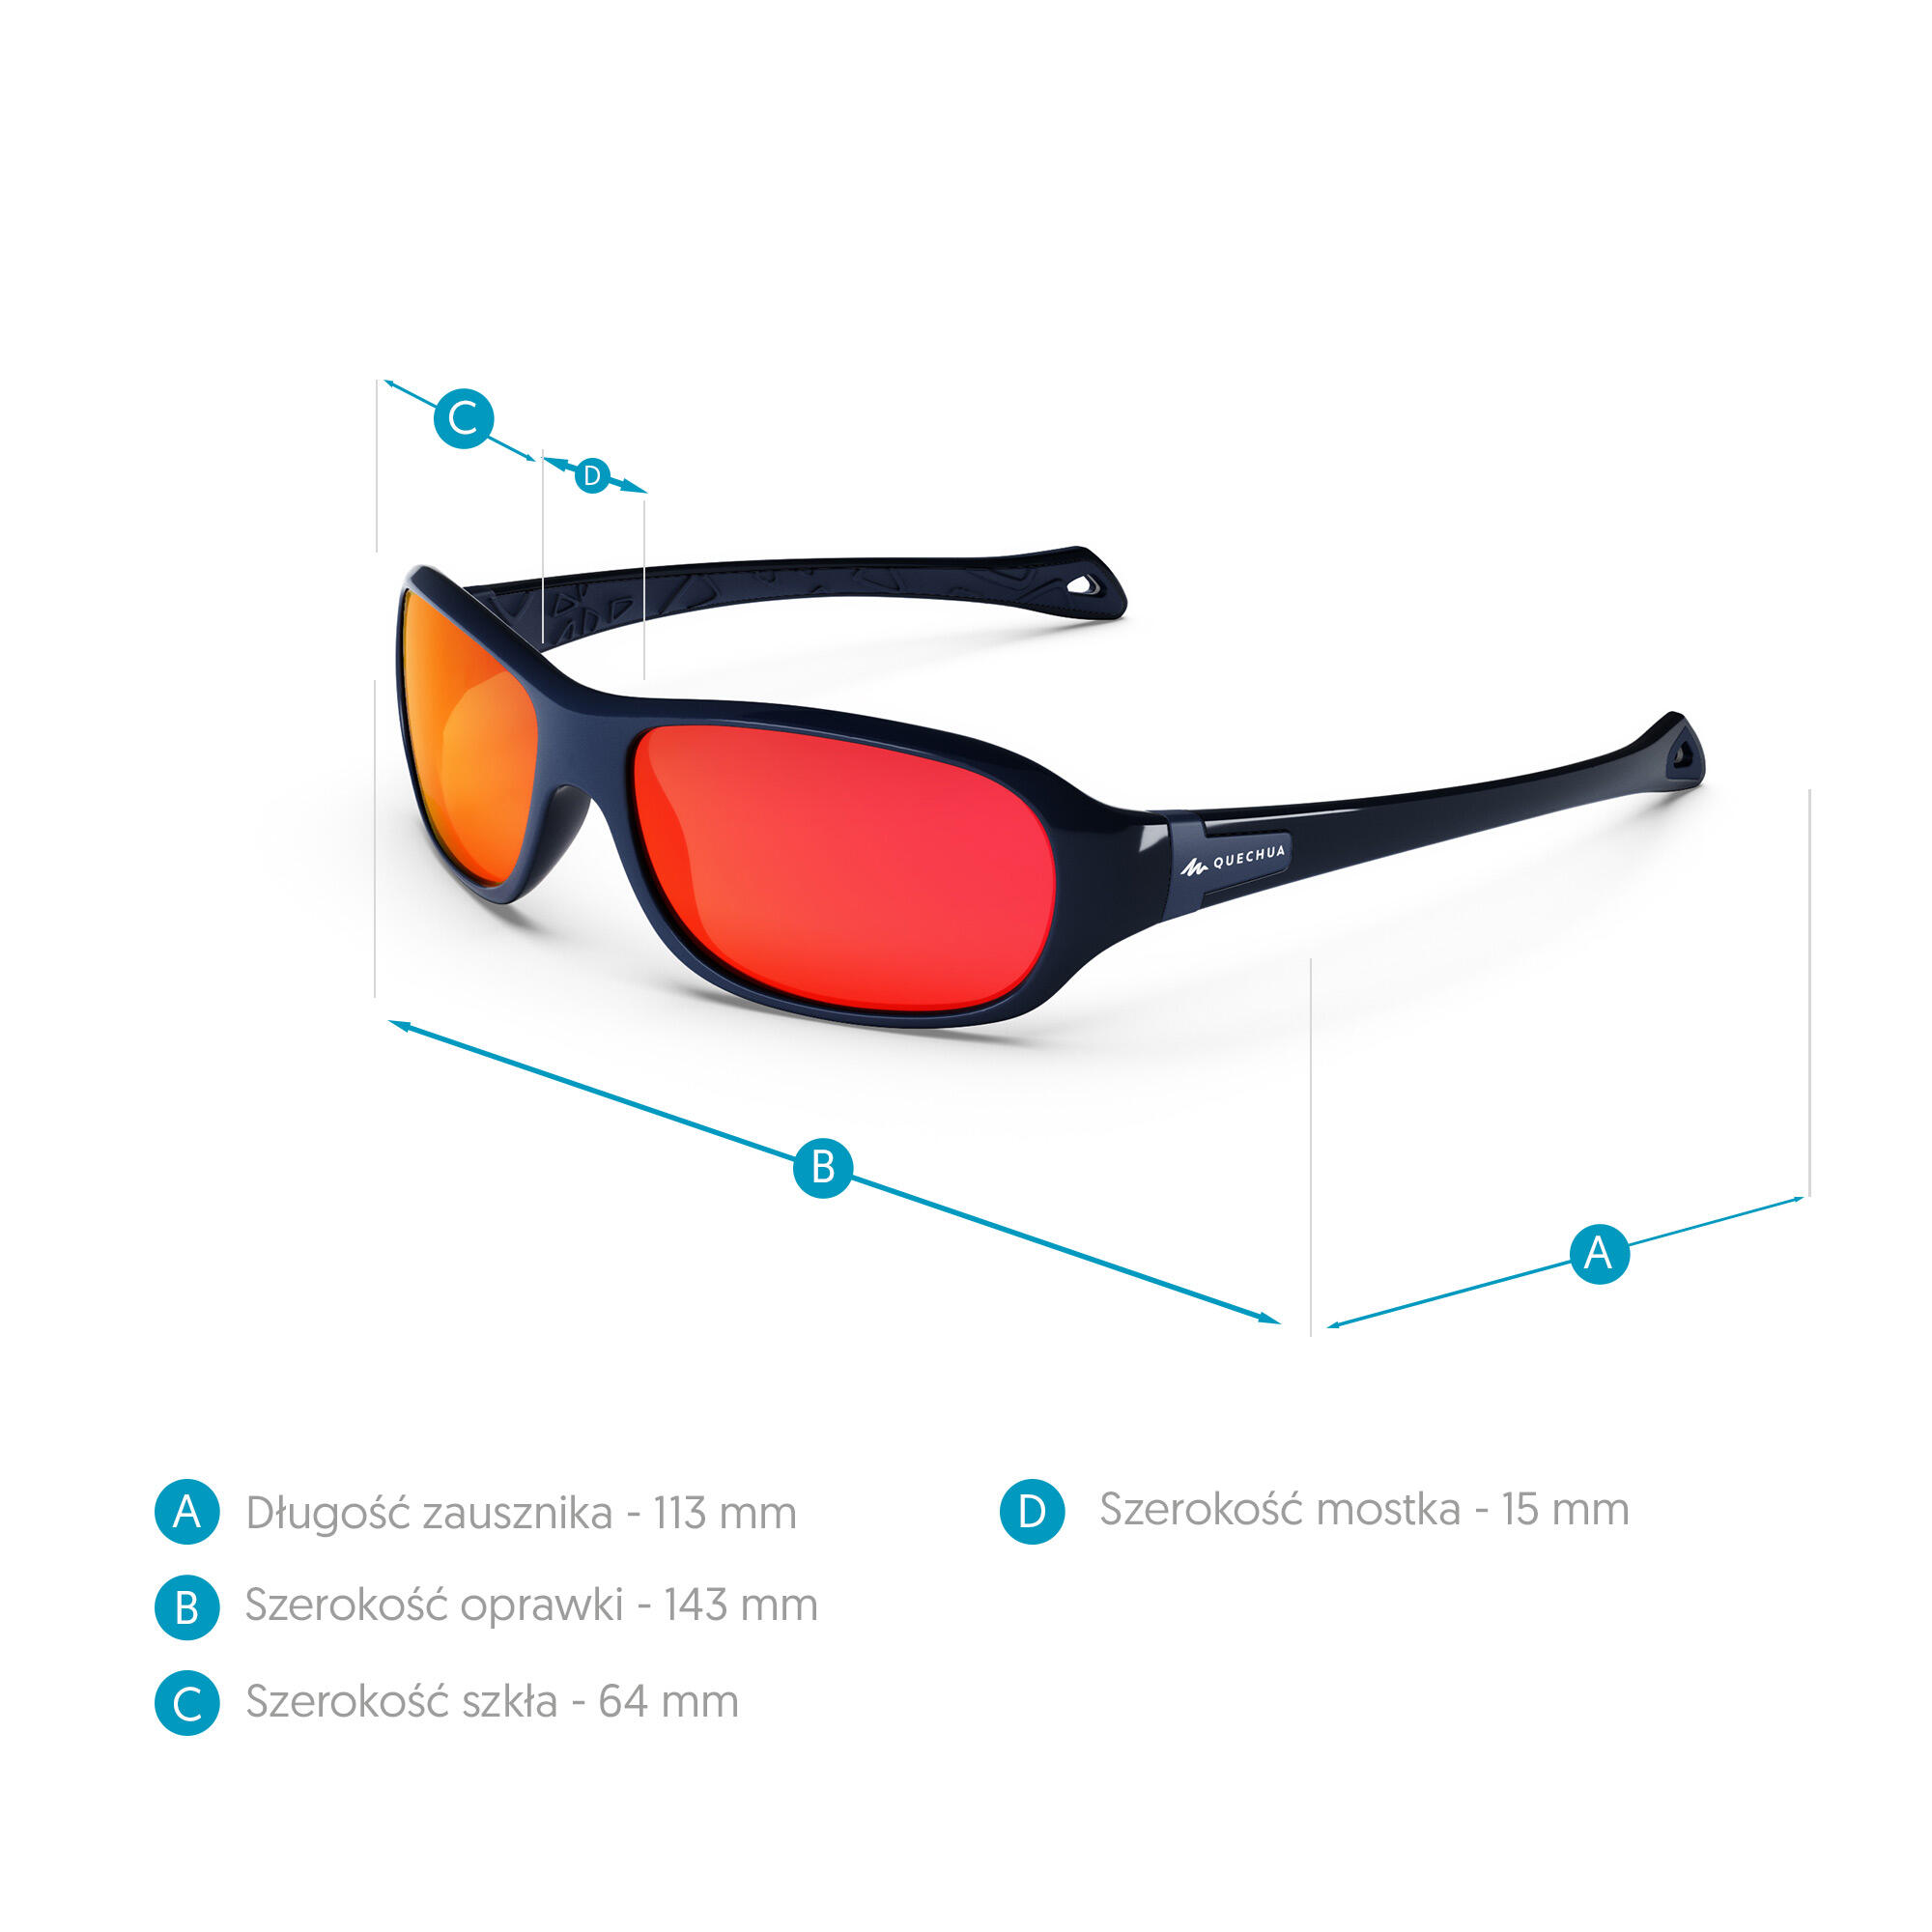 Sunglasses for Men & Women Buy Online - Decathlon